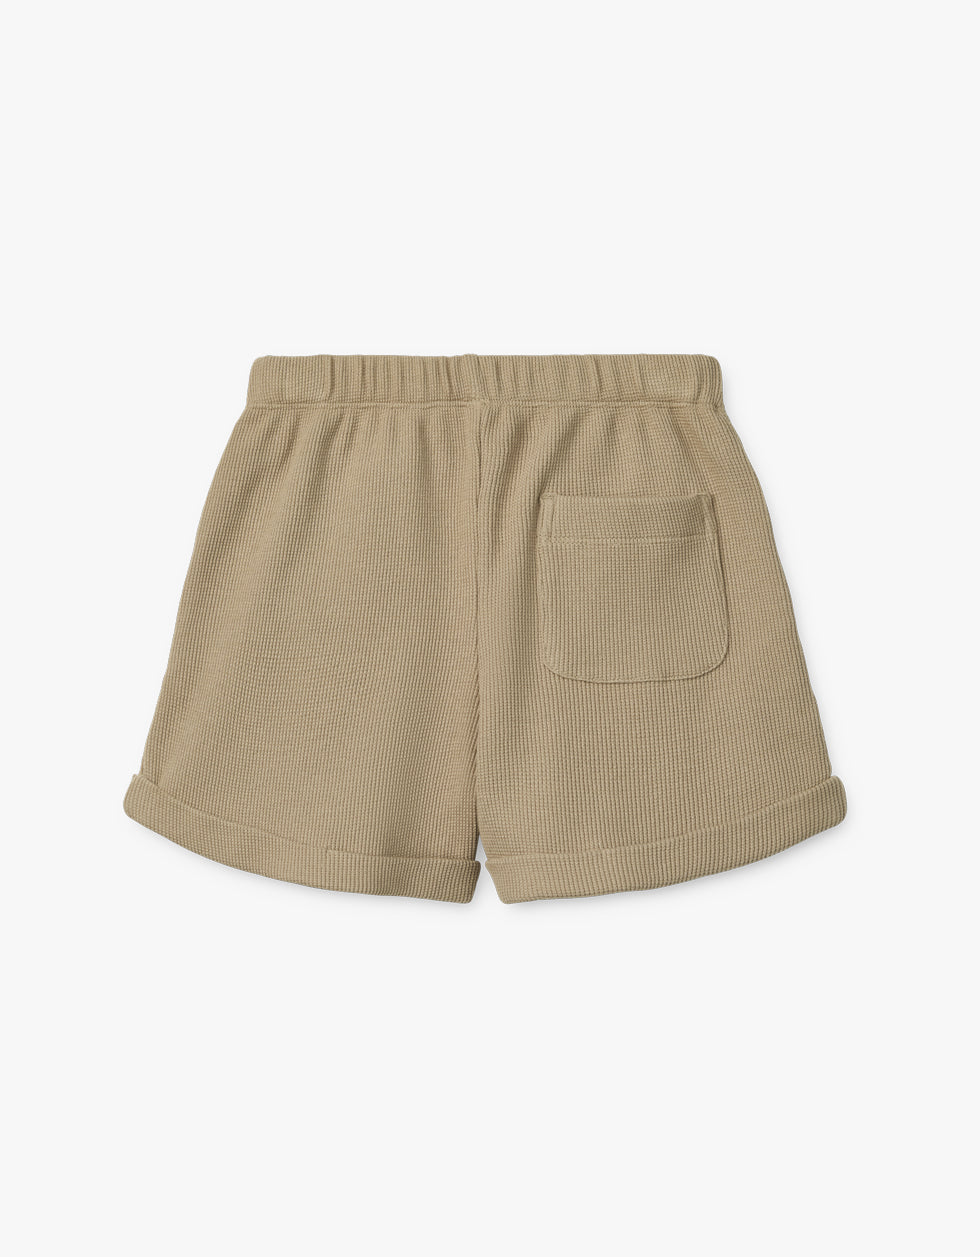 Cay Shorts | mist